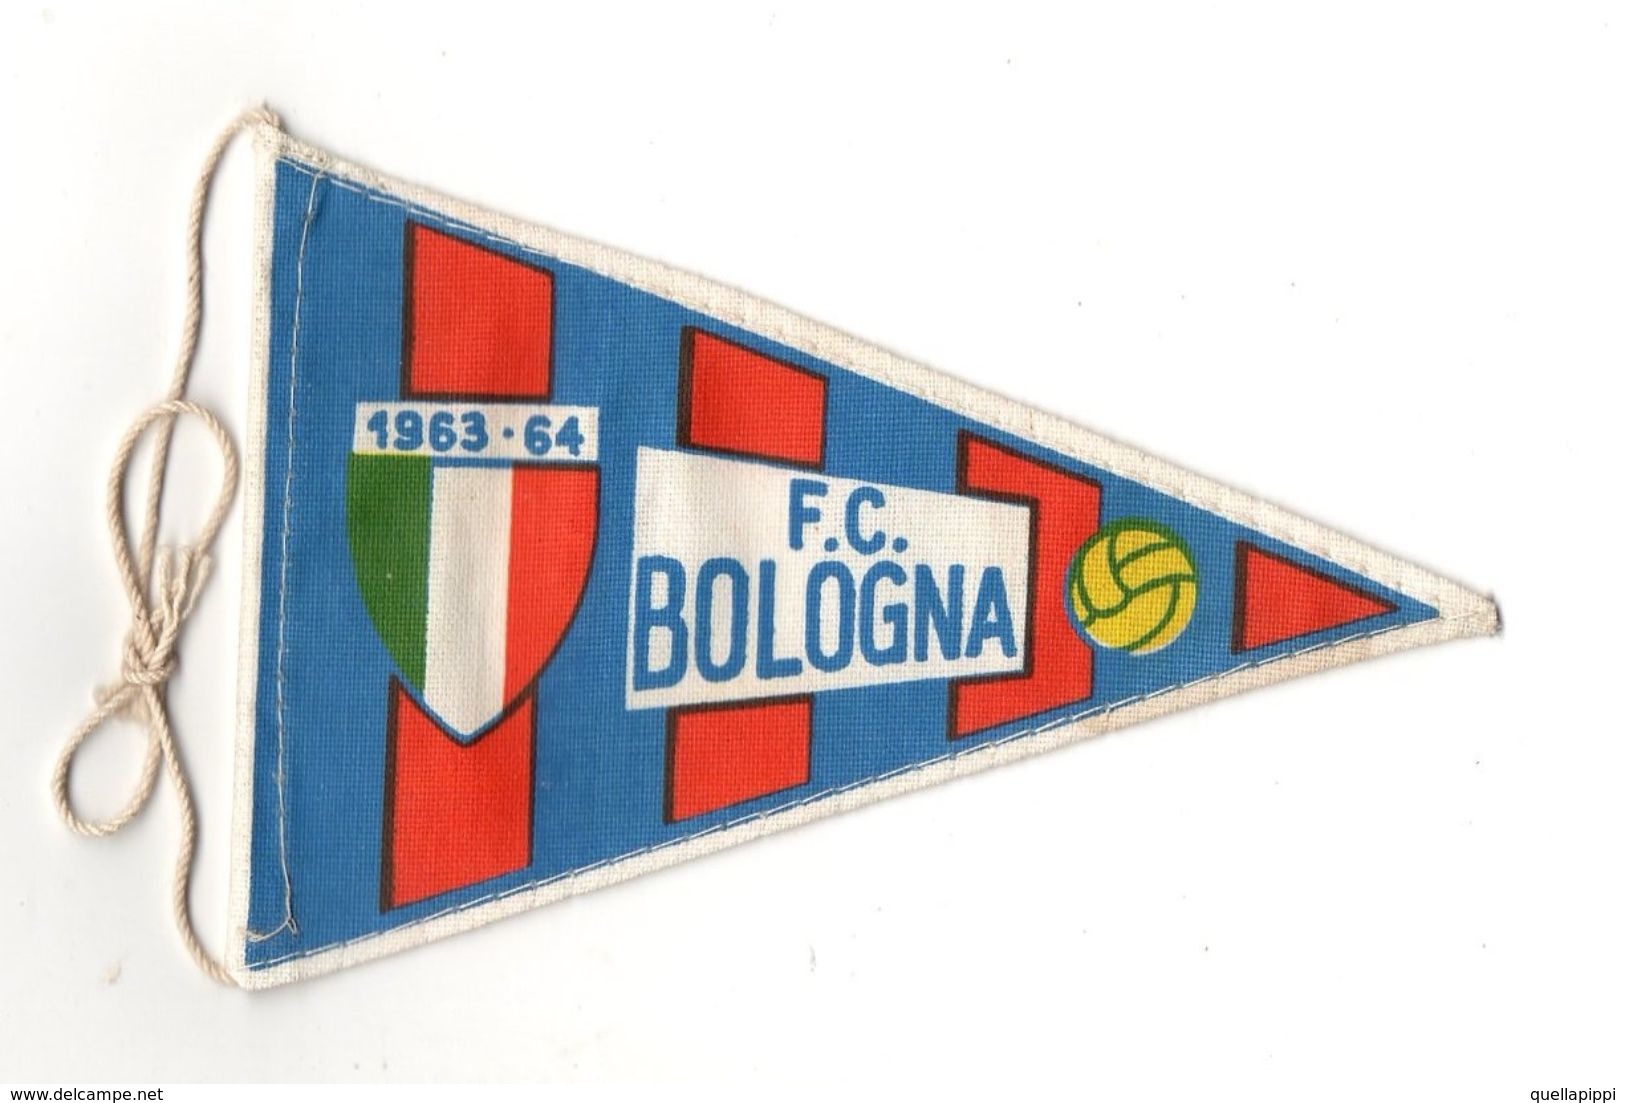 07130 "BOLOGNA F.C. FOOTBALL CLUB - BANDIERINA BIFRONTE IN STOFFA CON LEGACCI" ANNI 1963/1964 ORIG. - Abbigliamento, Souvenirs & Varie